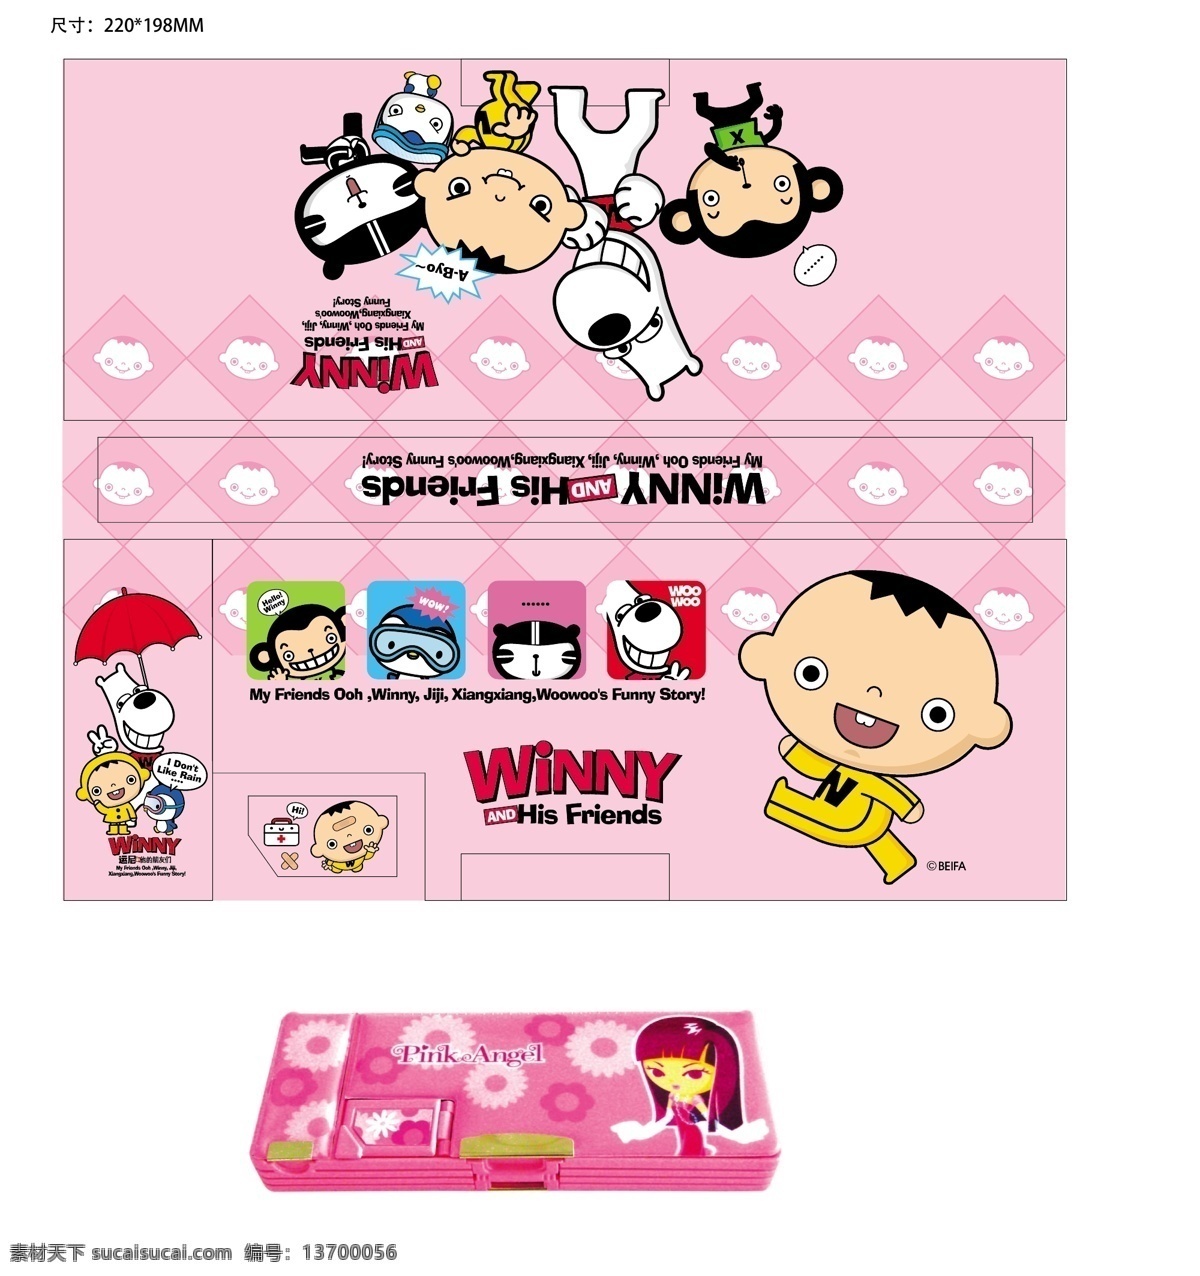 winny 多功能 笔盒 粉色 多功能笔盒 卡通 粉红 动漫动画